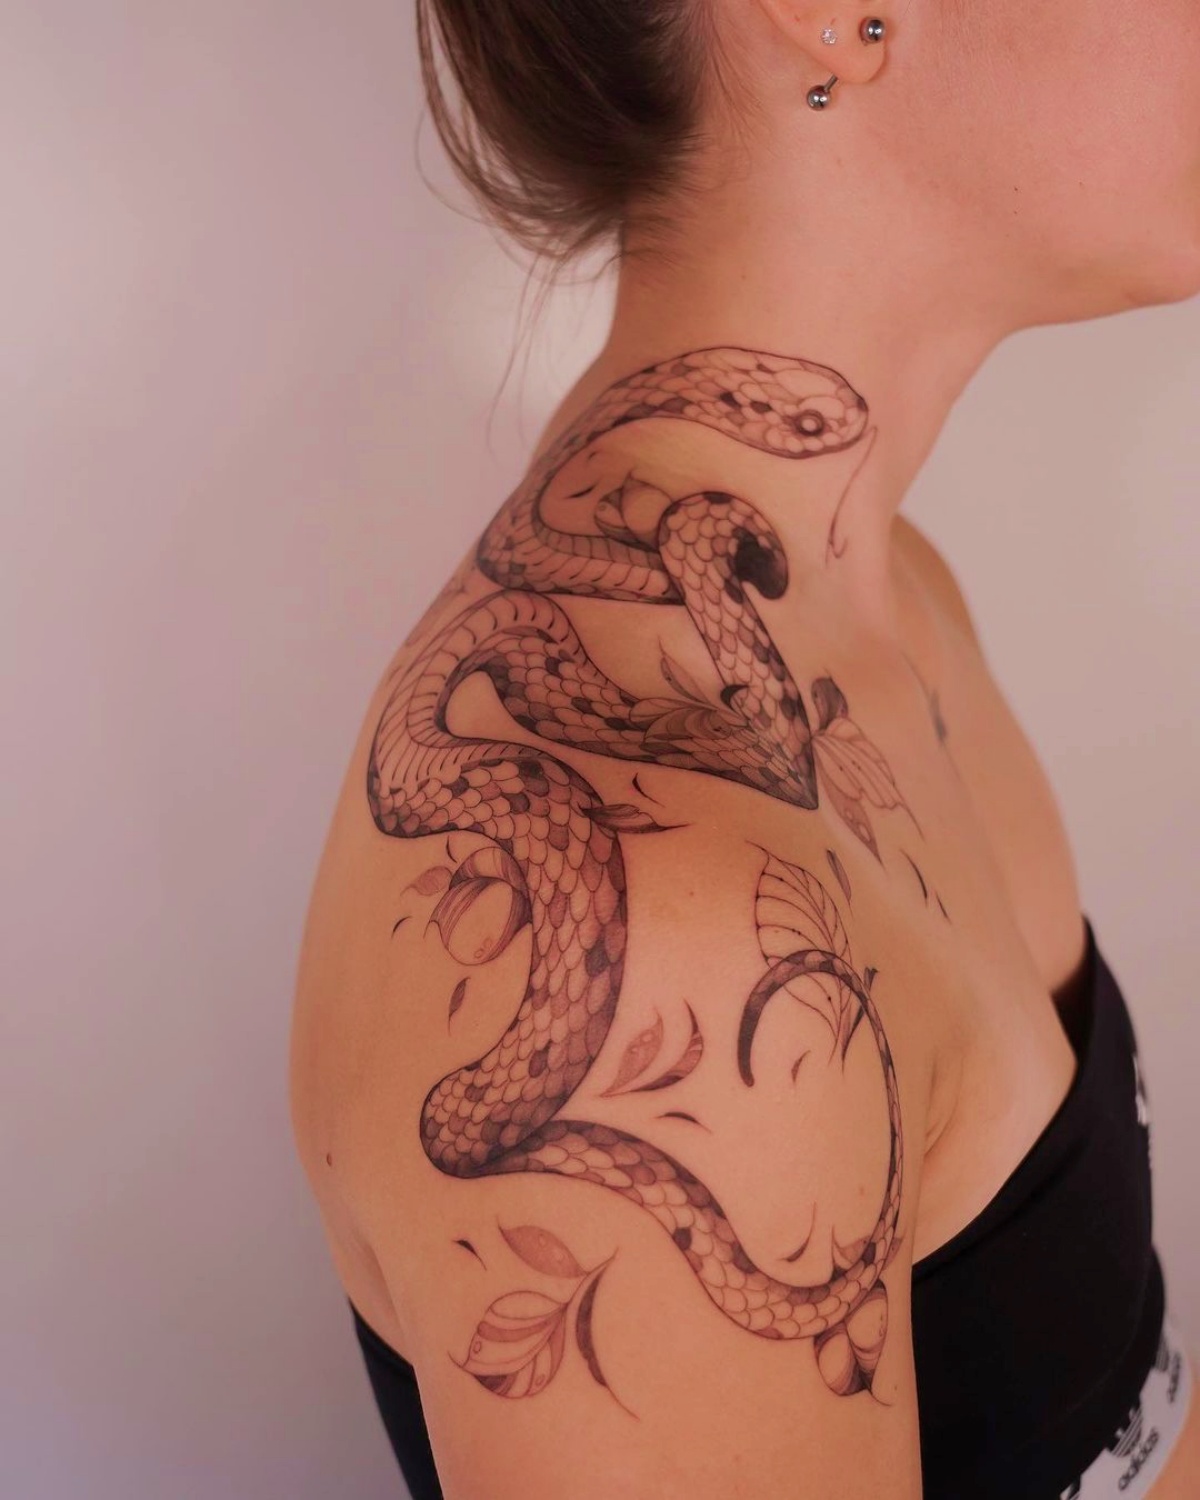 ragazza con tatuaggio sulla spalla tattoo serpente significato